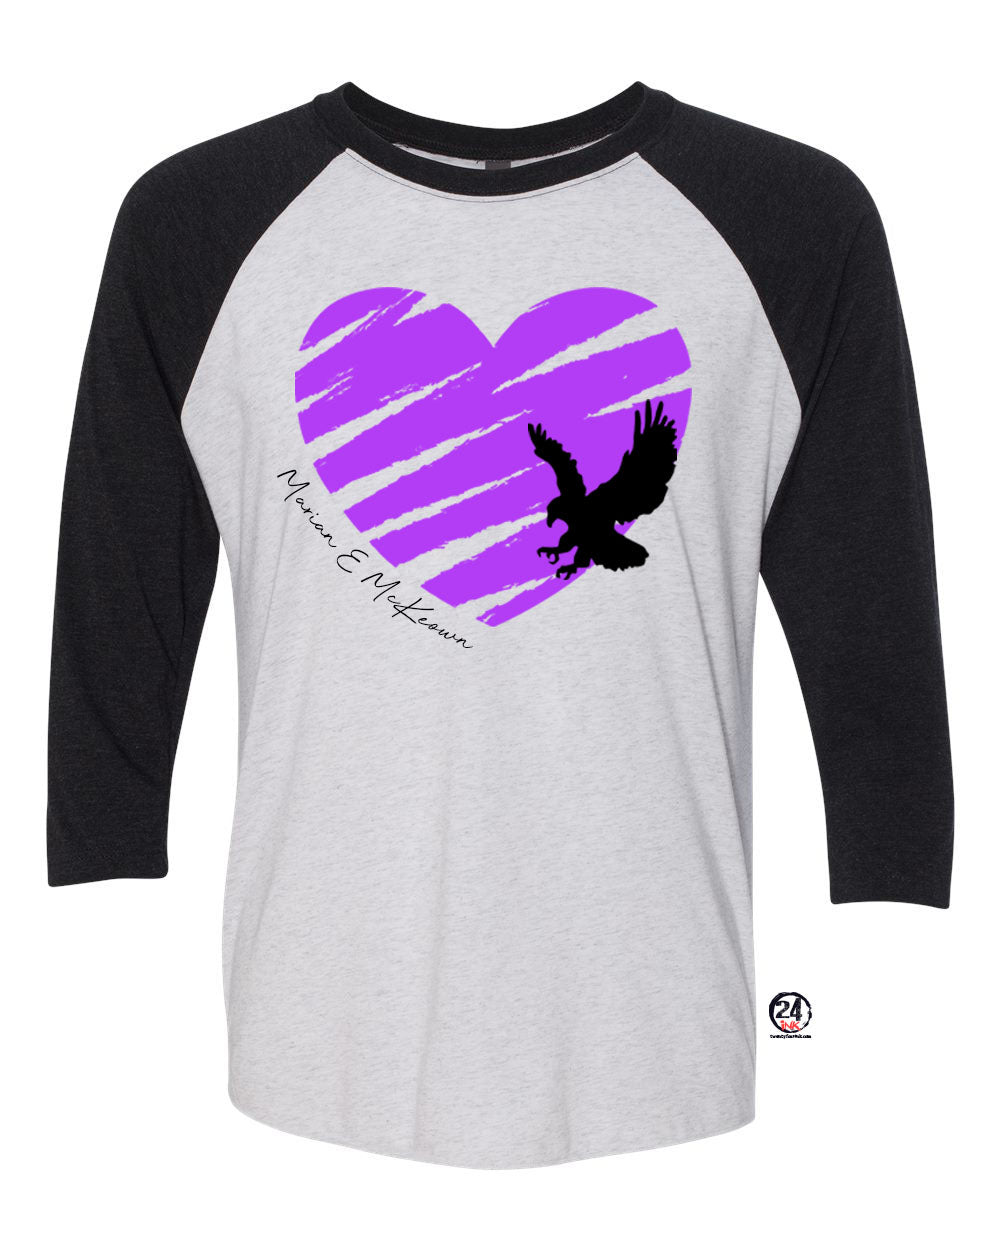 Heart Hawk Raglan shirt